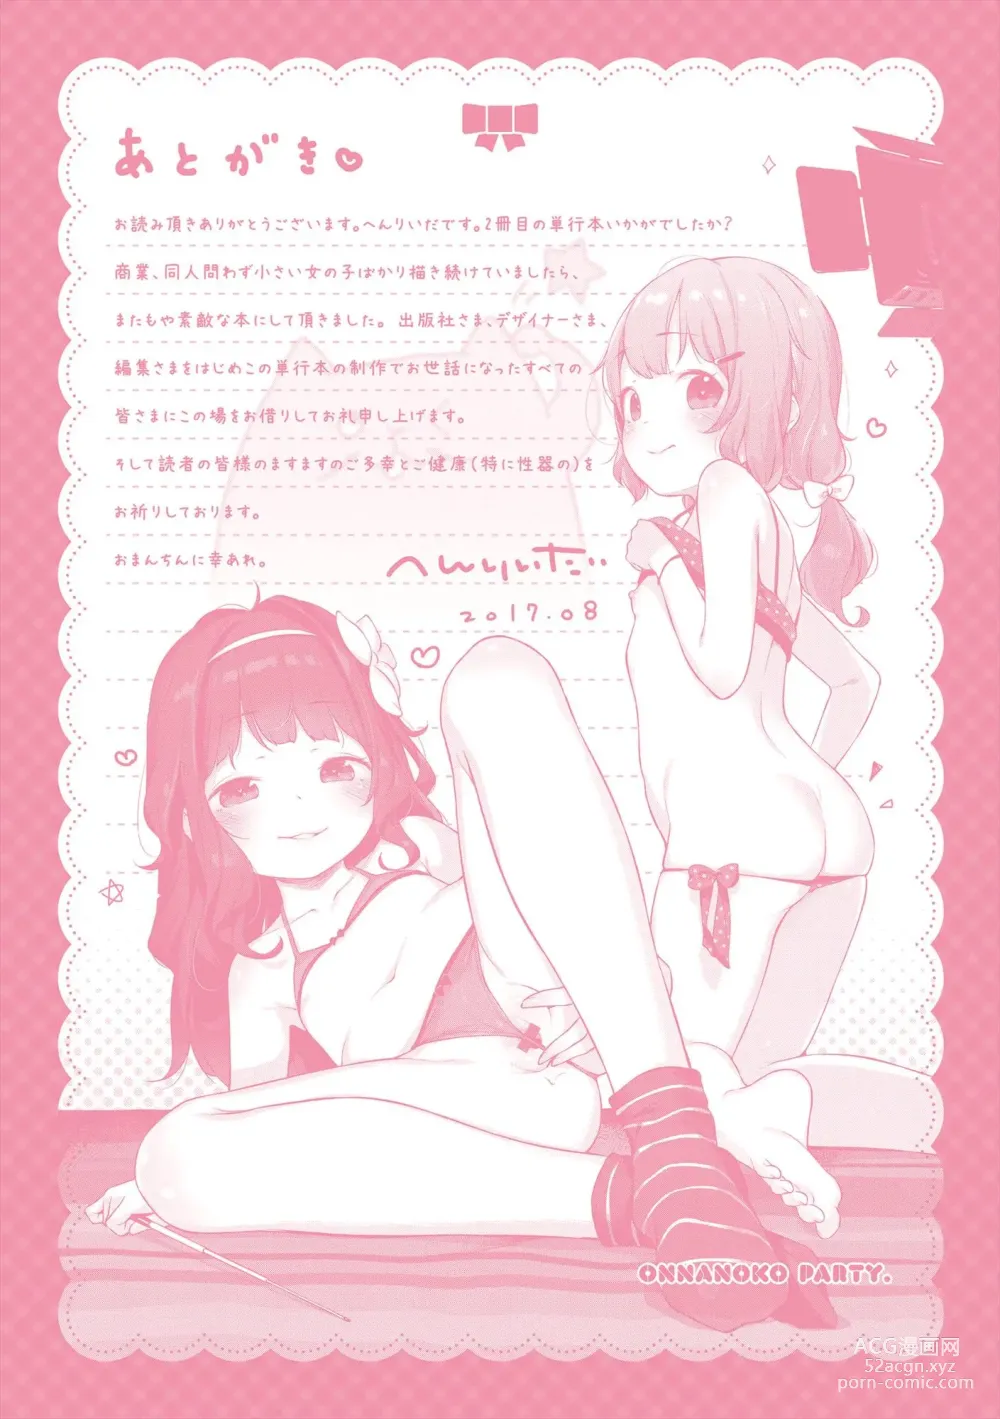 Page 303 of manga Onnanoko Party.